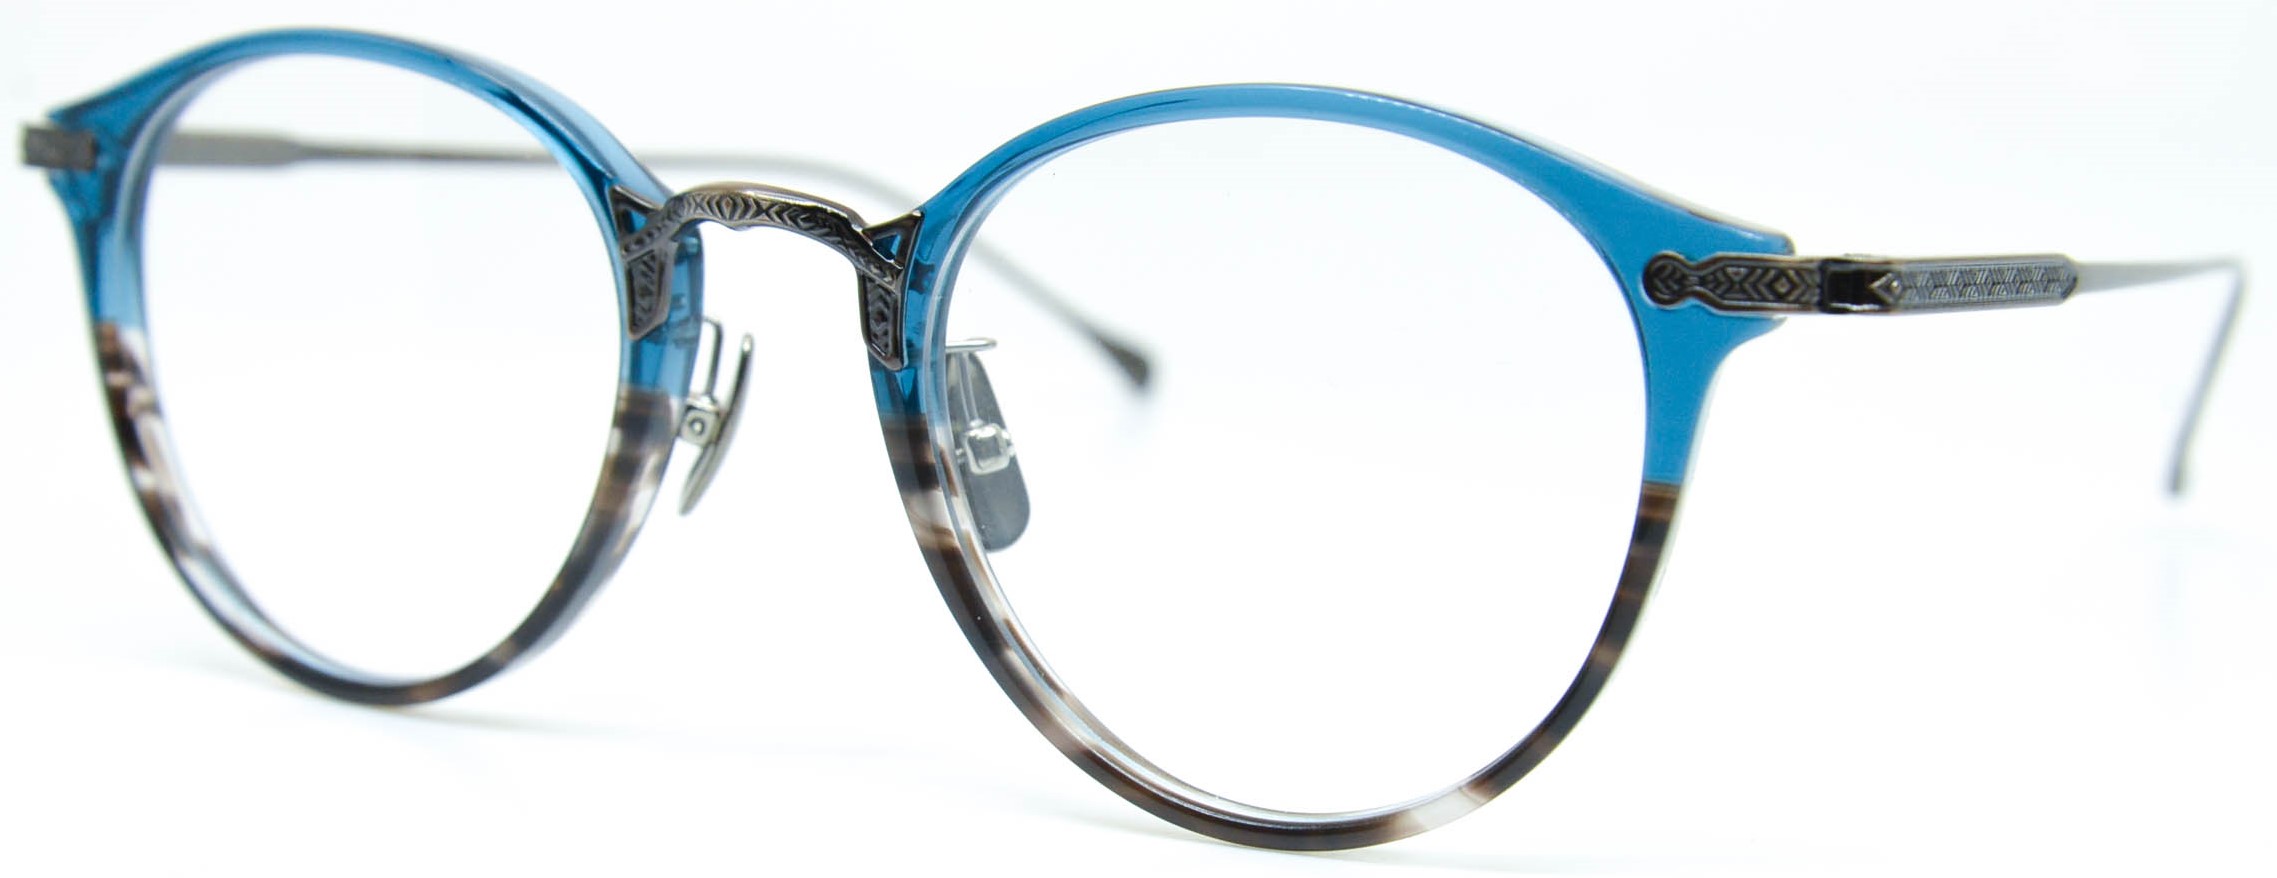 眼鏡のカラータイプC-6 Blue-BrownSasa/At-Brown